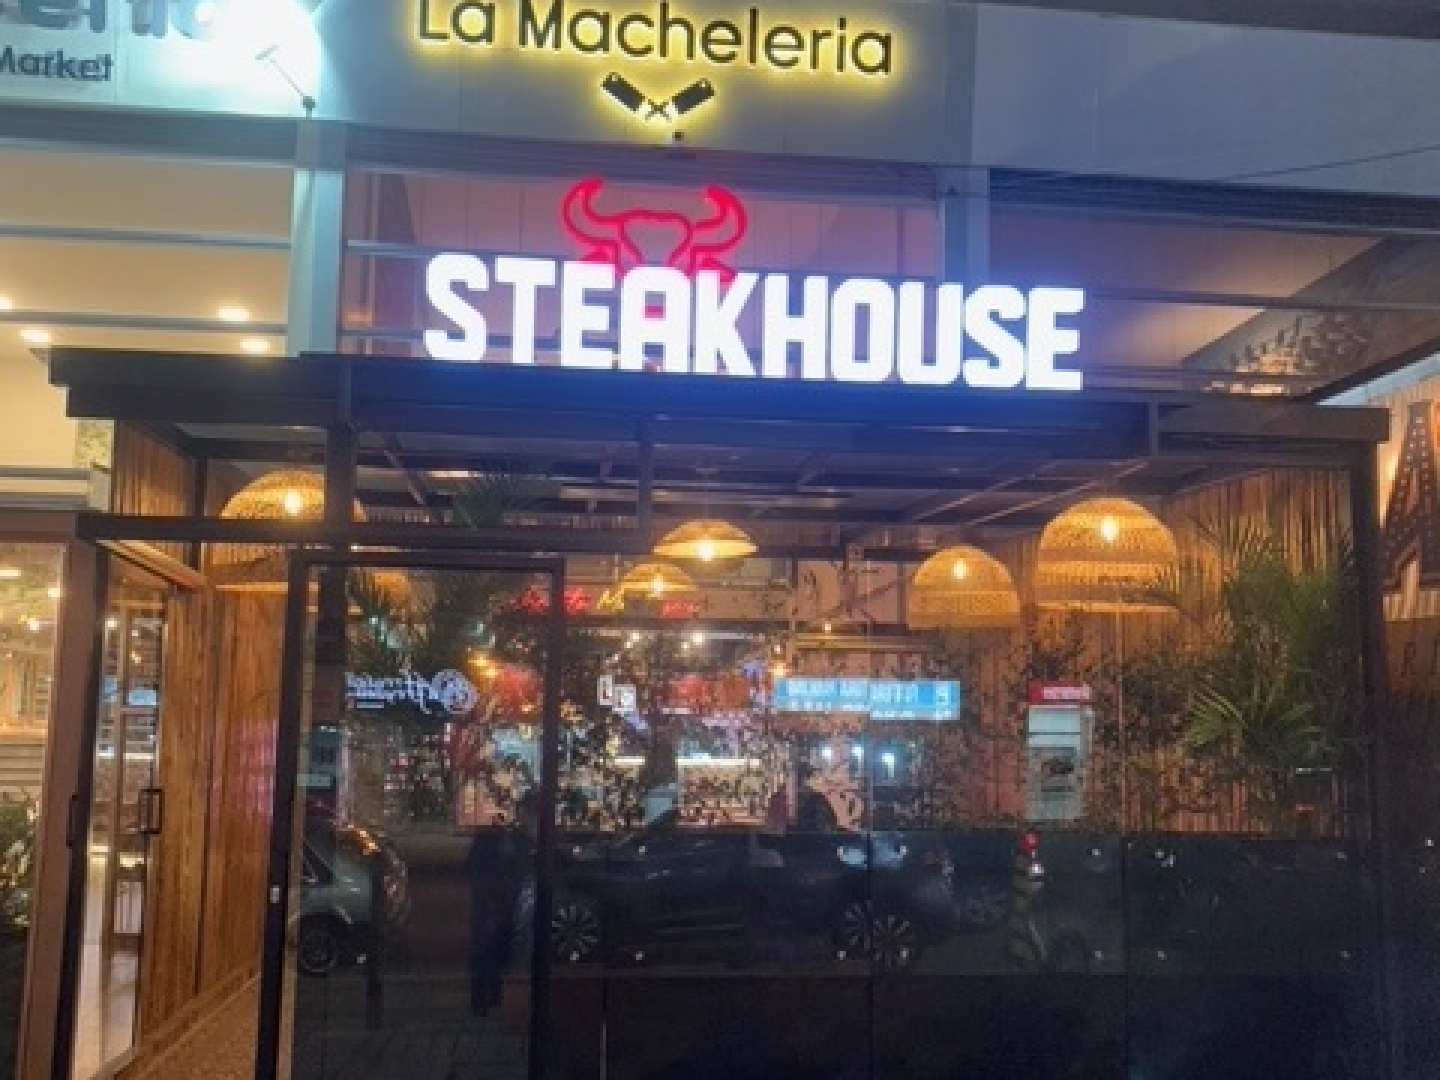 La Macheleria Steak House